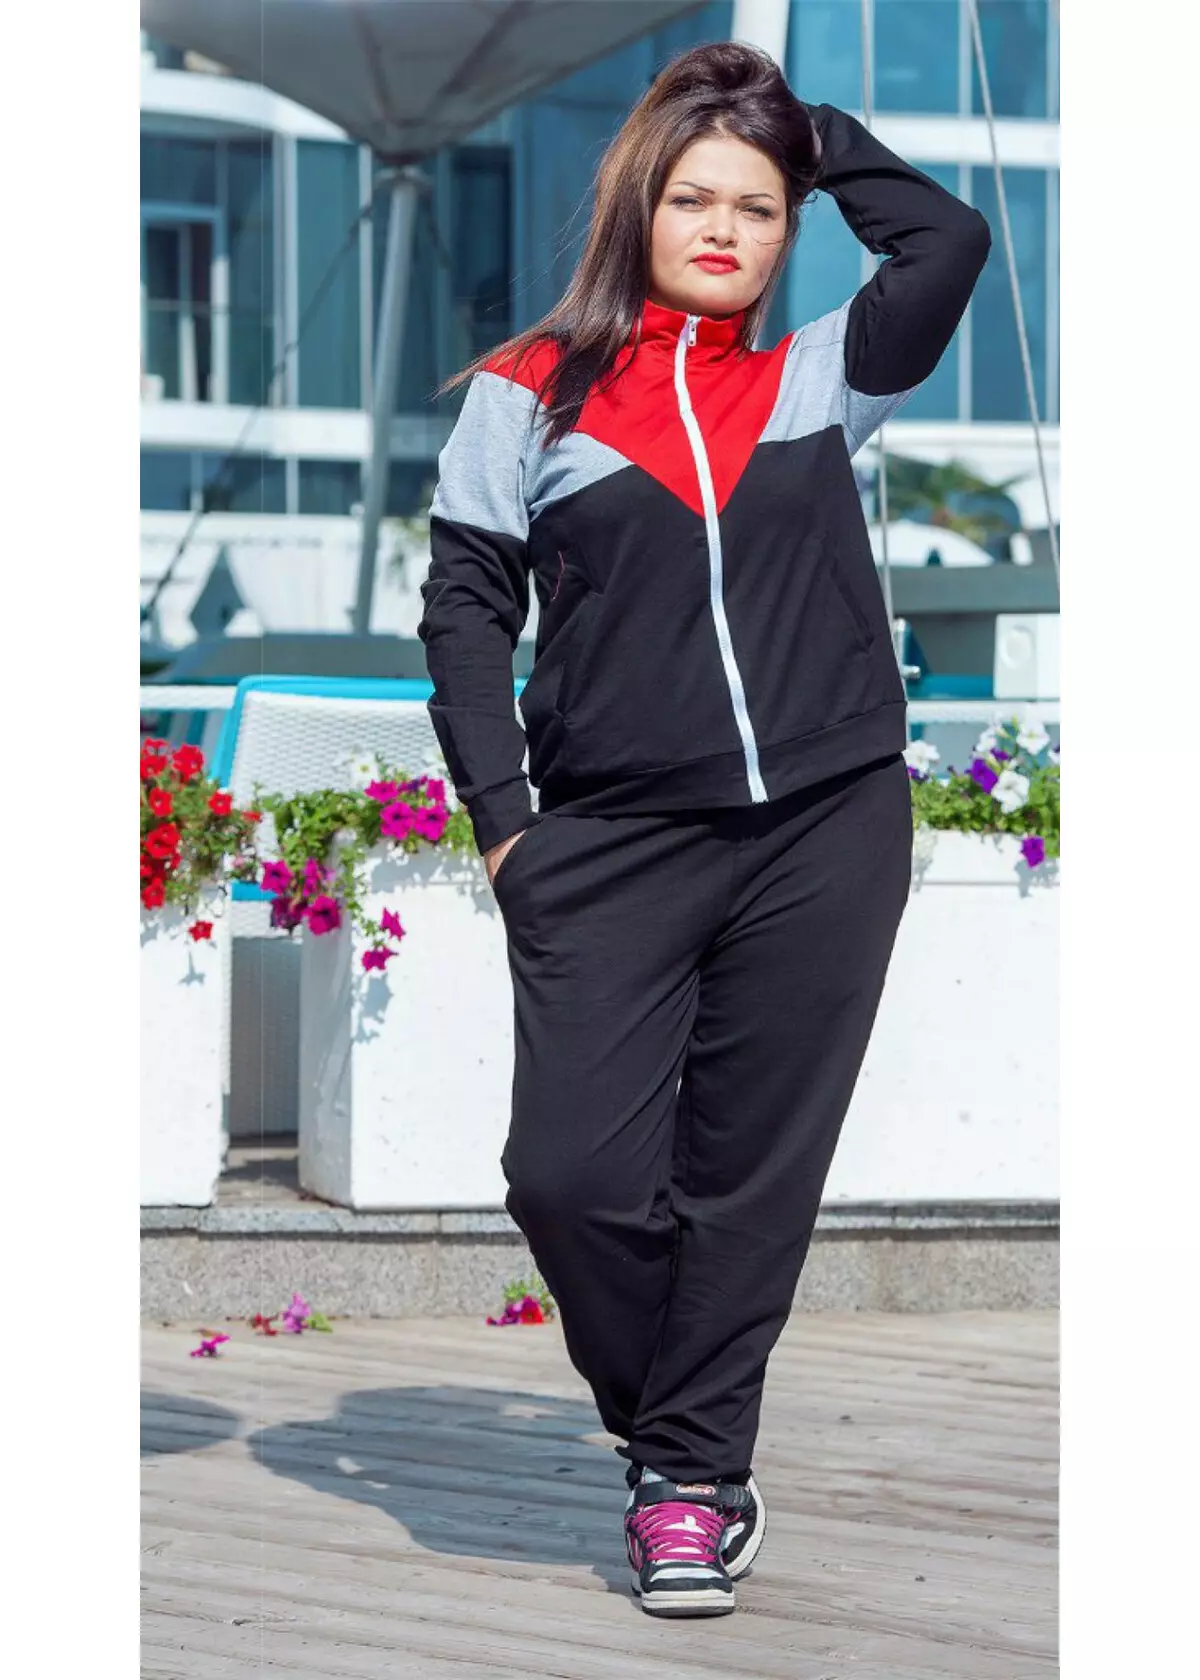 Kupper Sports Ternits (35 fotos): Modelos de mulheres, revisões, roupas para esportes 1366_20